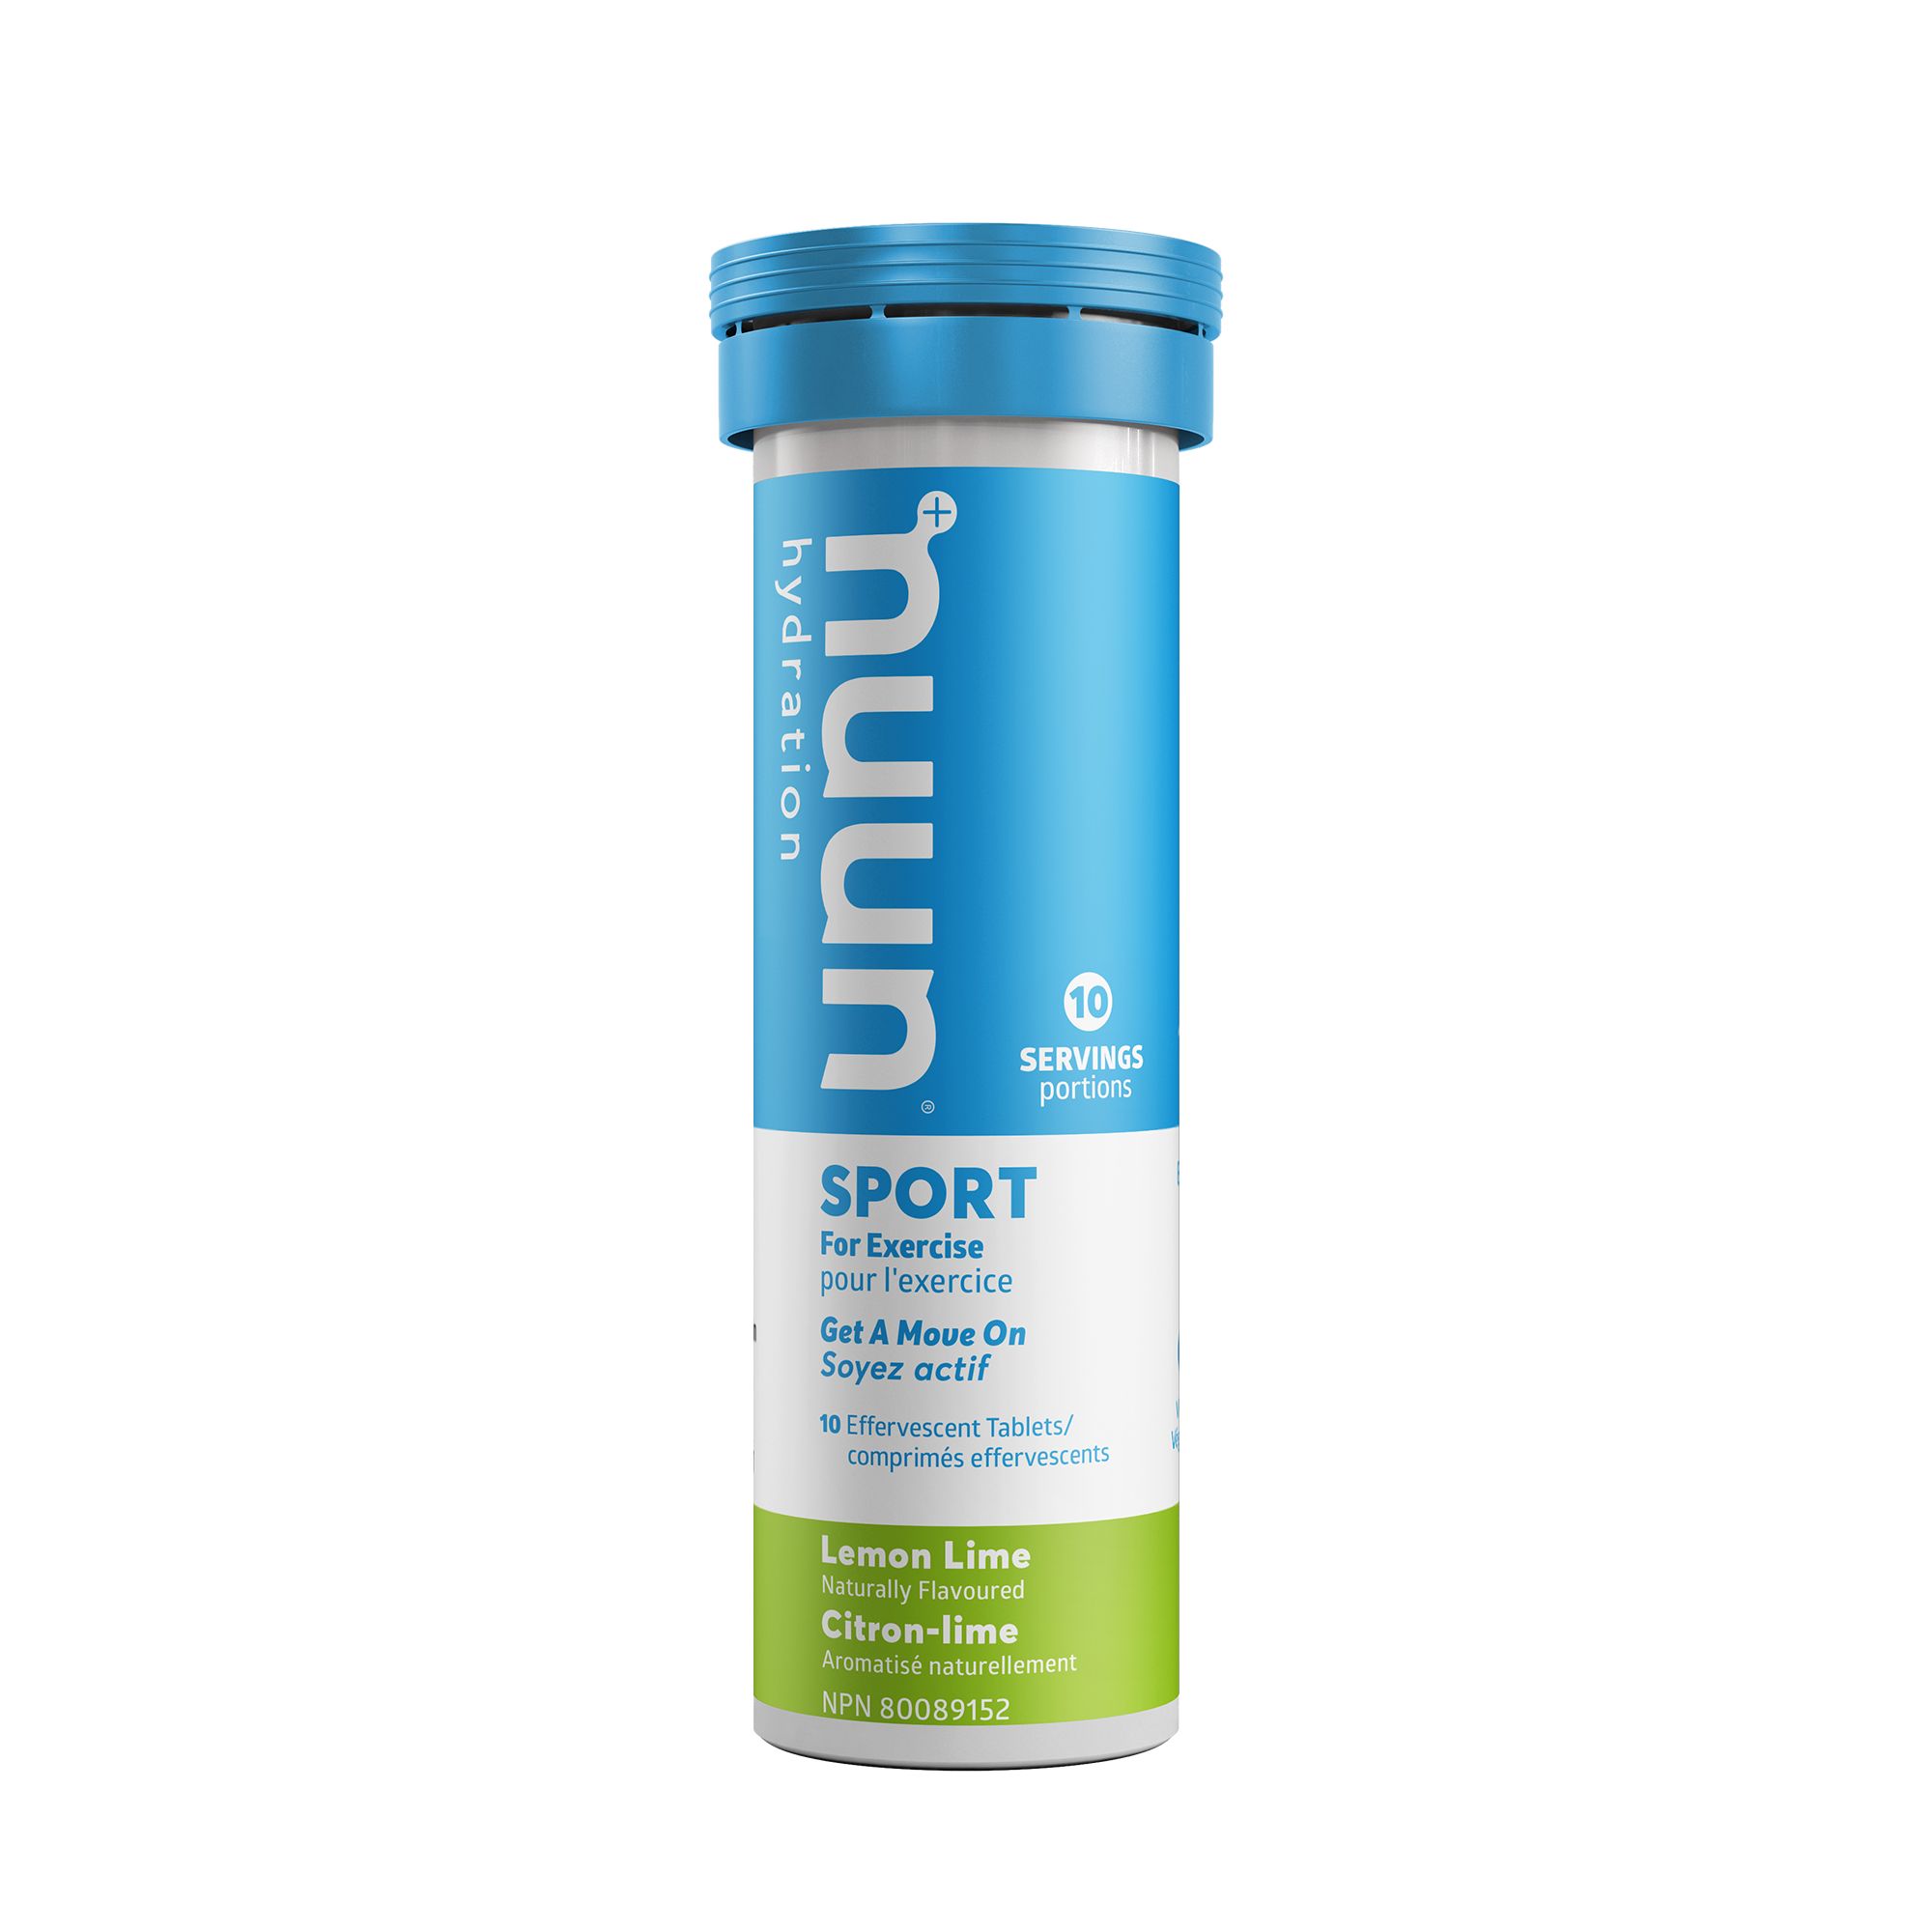 Image of Nuun Sport Lemon Lime Electrolyte Drink Tablets